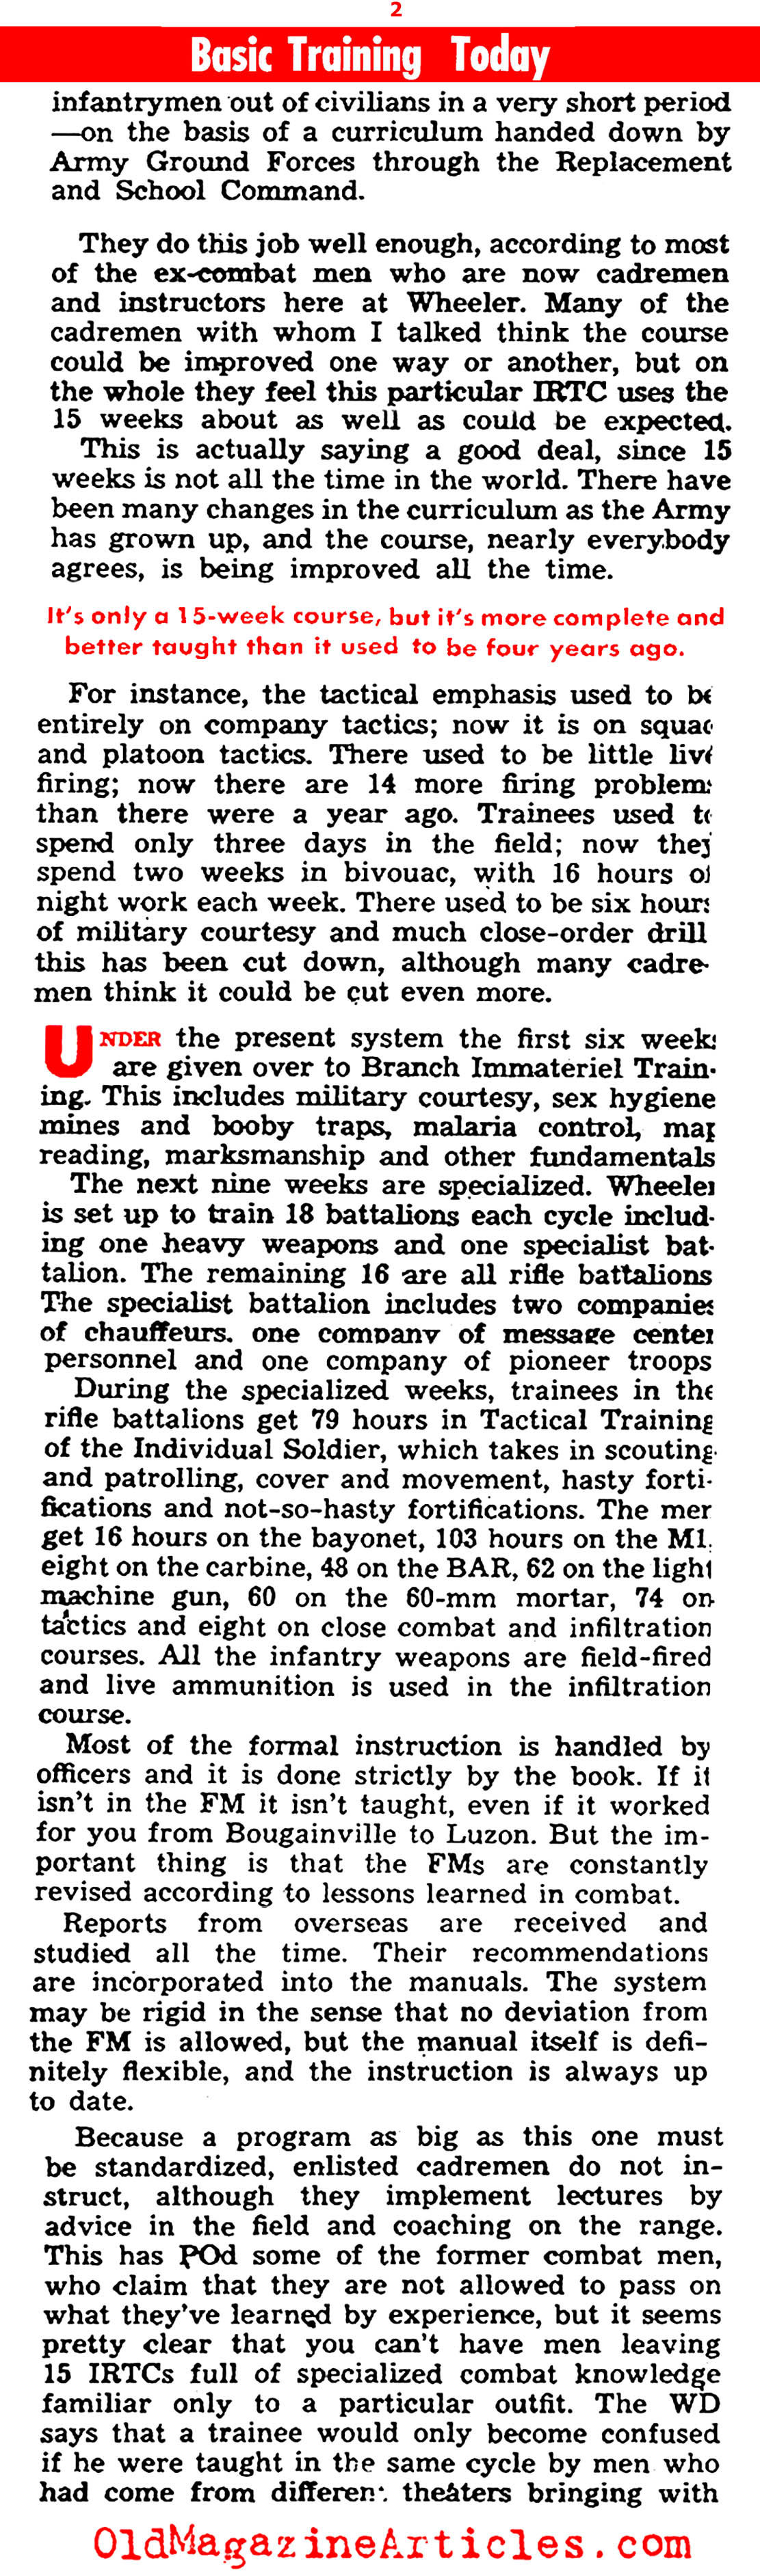 Late War Combat Training: Camp Wheeler (Yank Magazine, 1945)